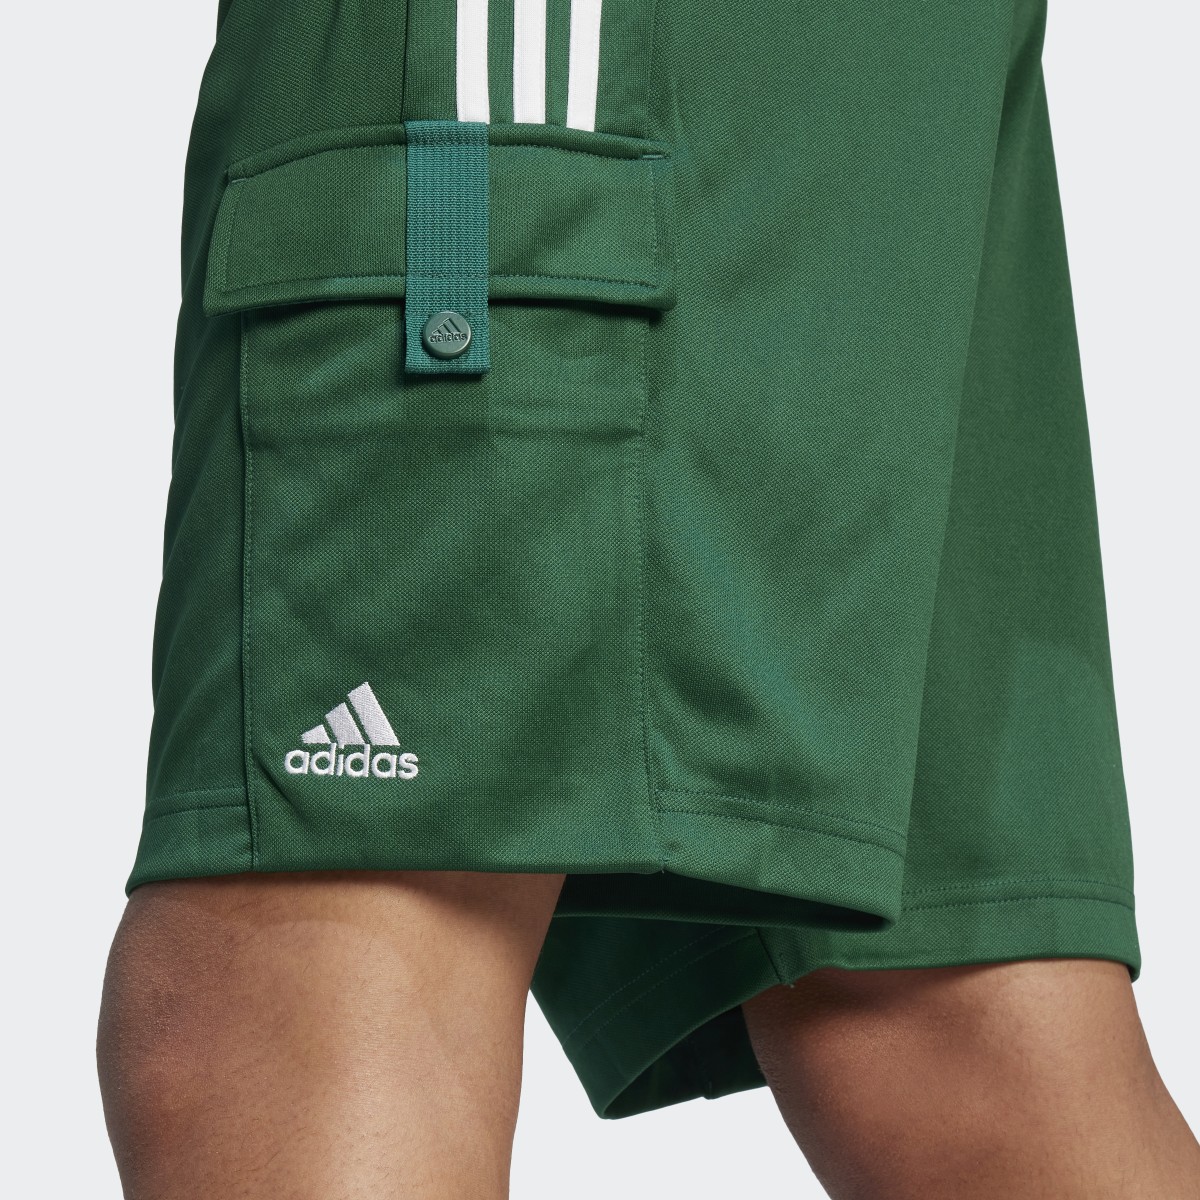 Adidas Tiro Cargo Shorts. 5